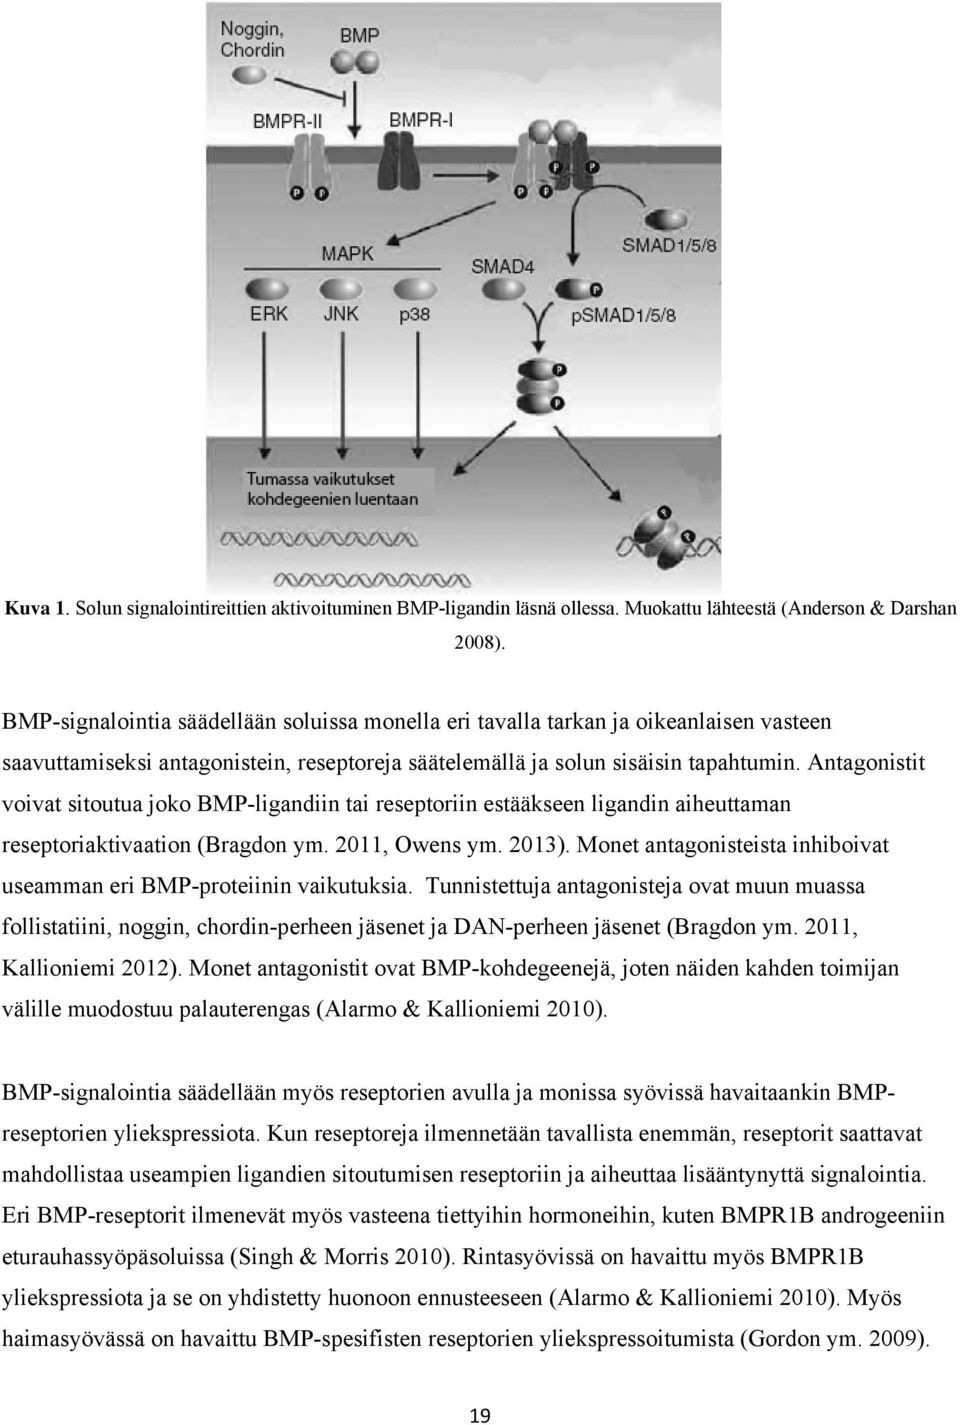 Antagonistit voivat sitoutua joko BMP-ligandiin tai reseptoriin estääkseen ligandin aiheuttaman reseptoriaktivaation (Bragdon ym. 2011, Owens ym. 2013).